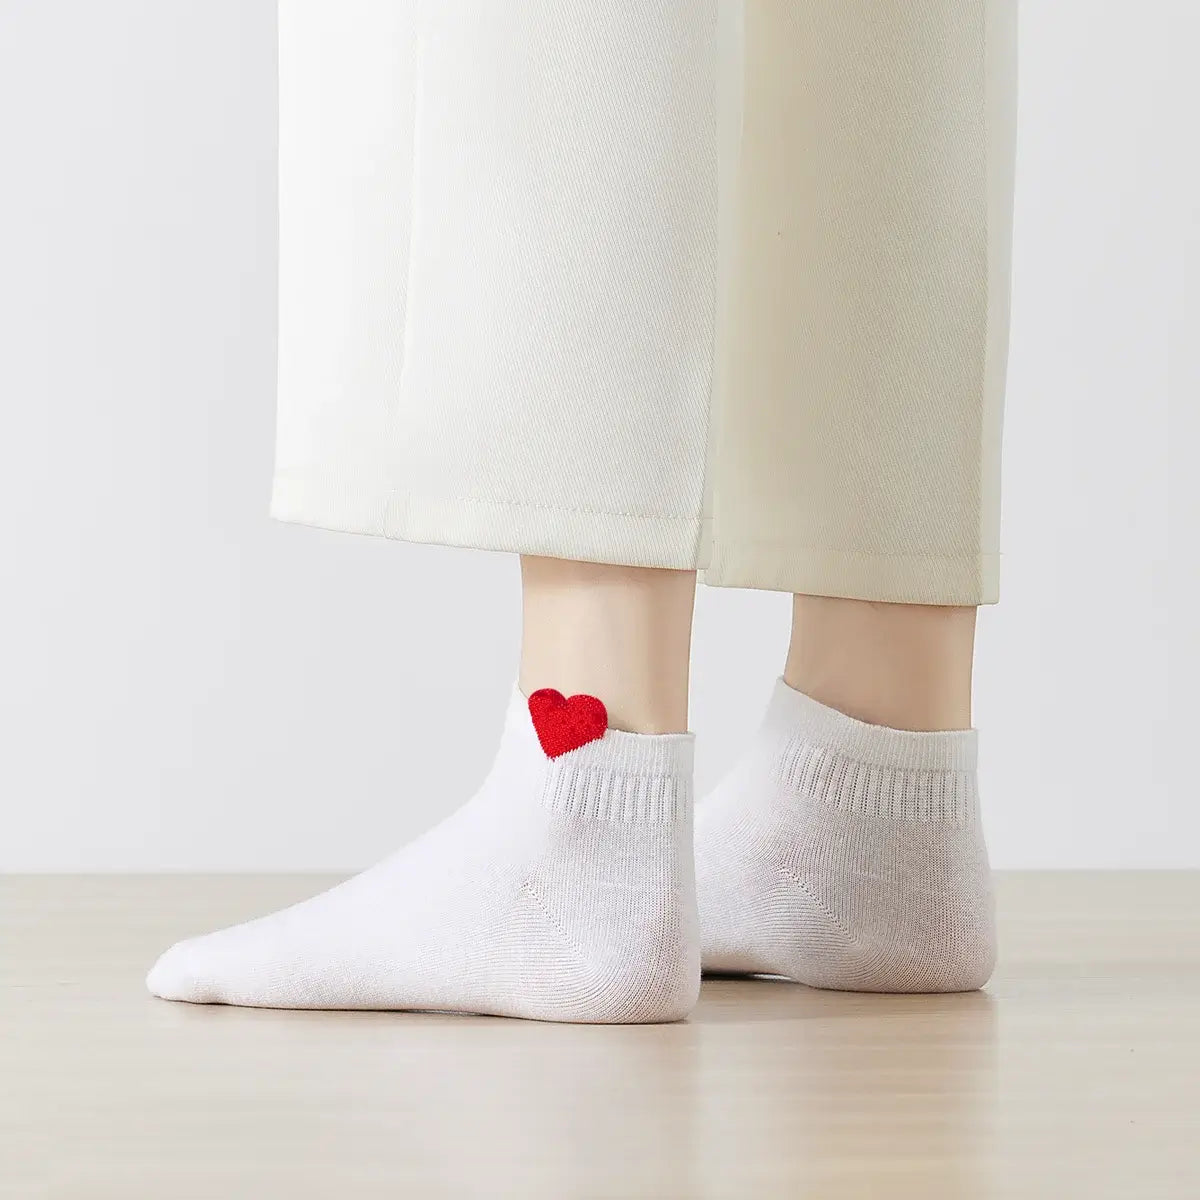 Des chaussettes douces pour les sports d'hiver en coton